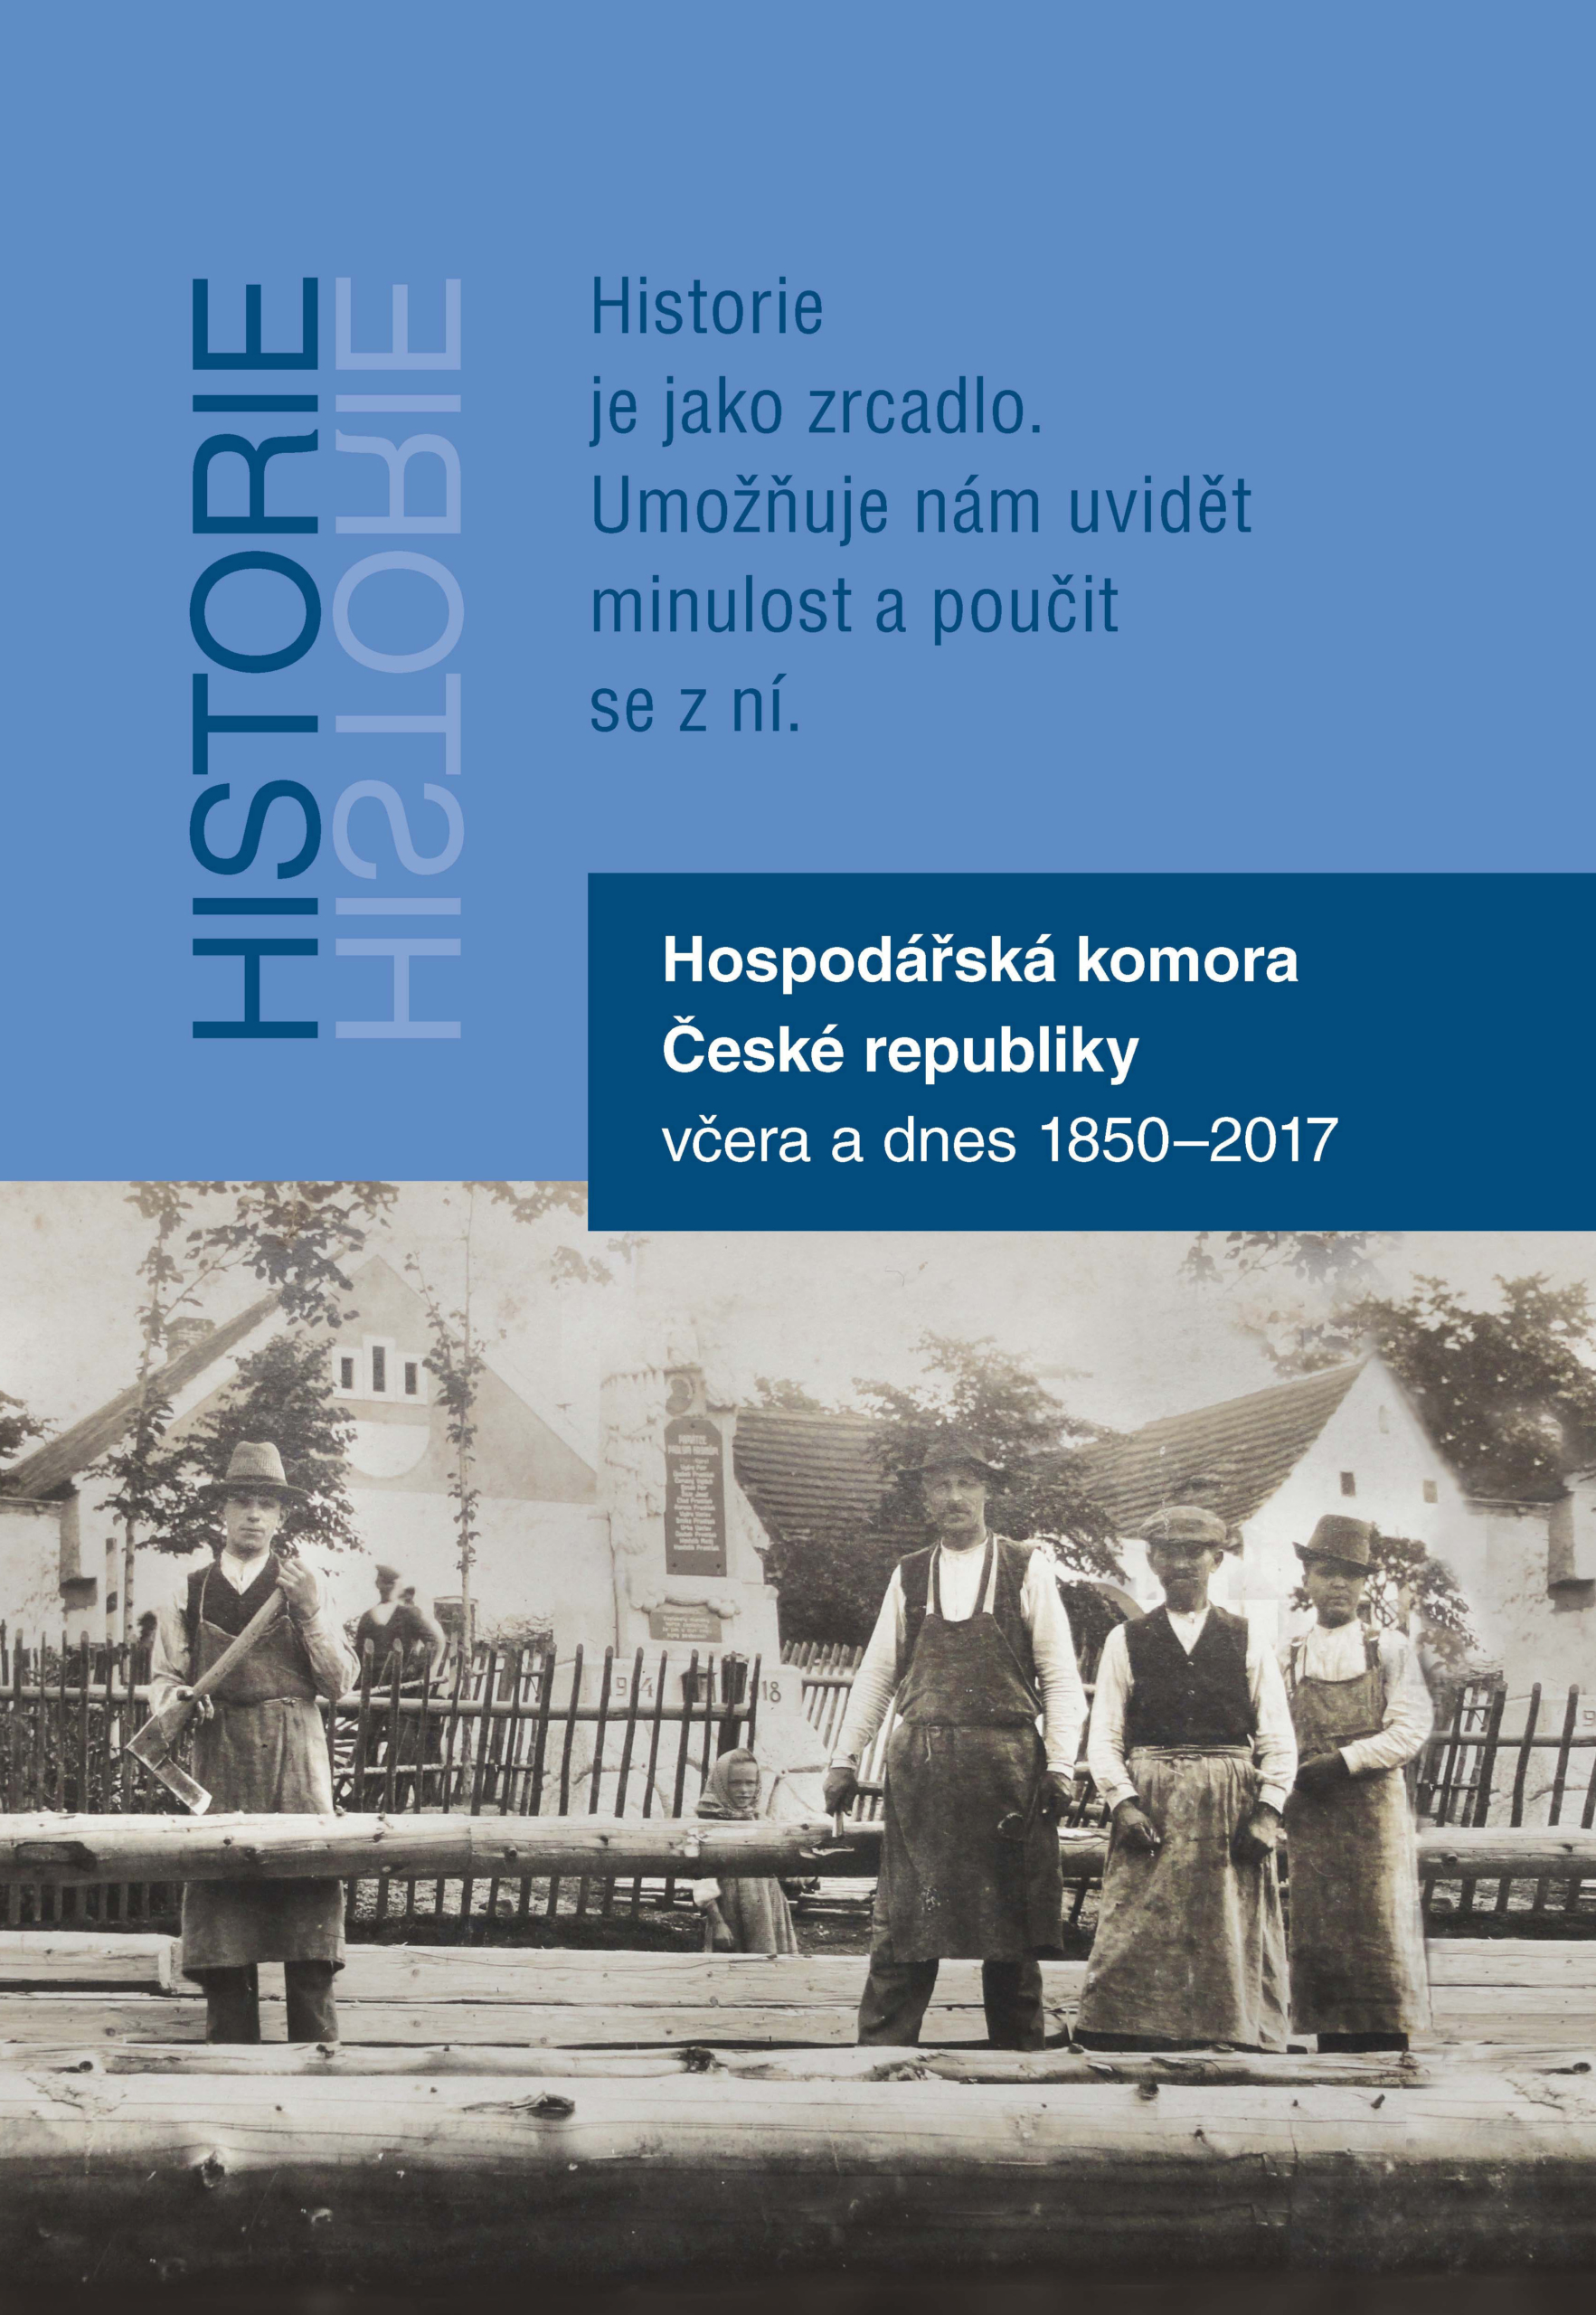 Reprezentativní publikace vydaná k výročí Hospodářské komory ČR